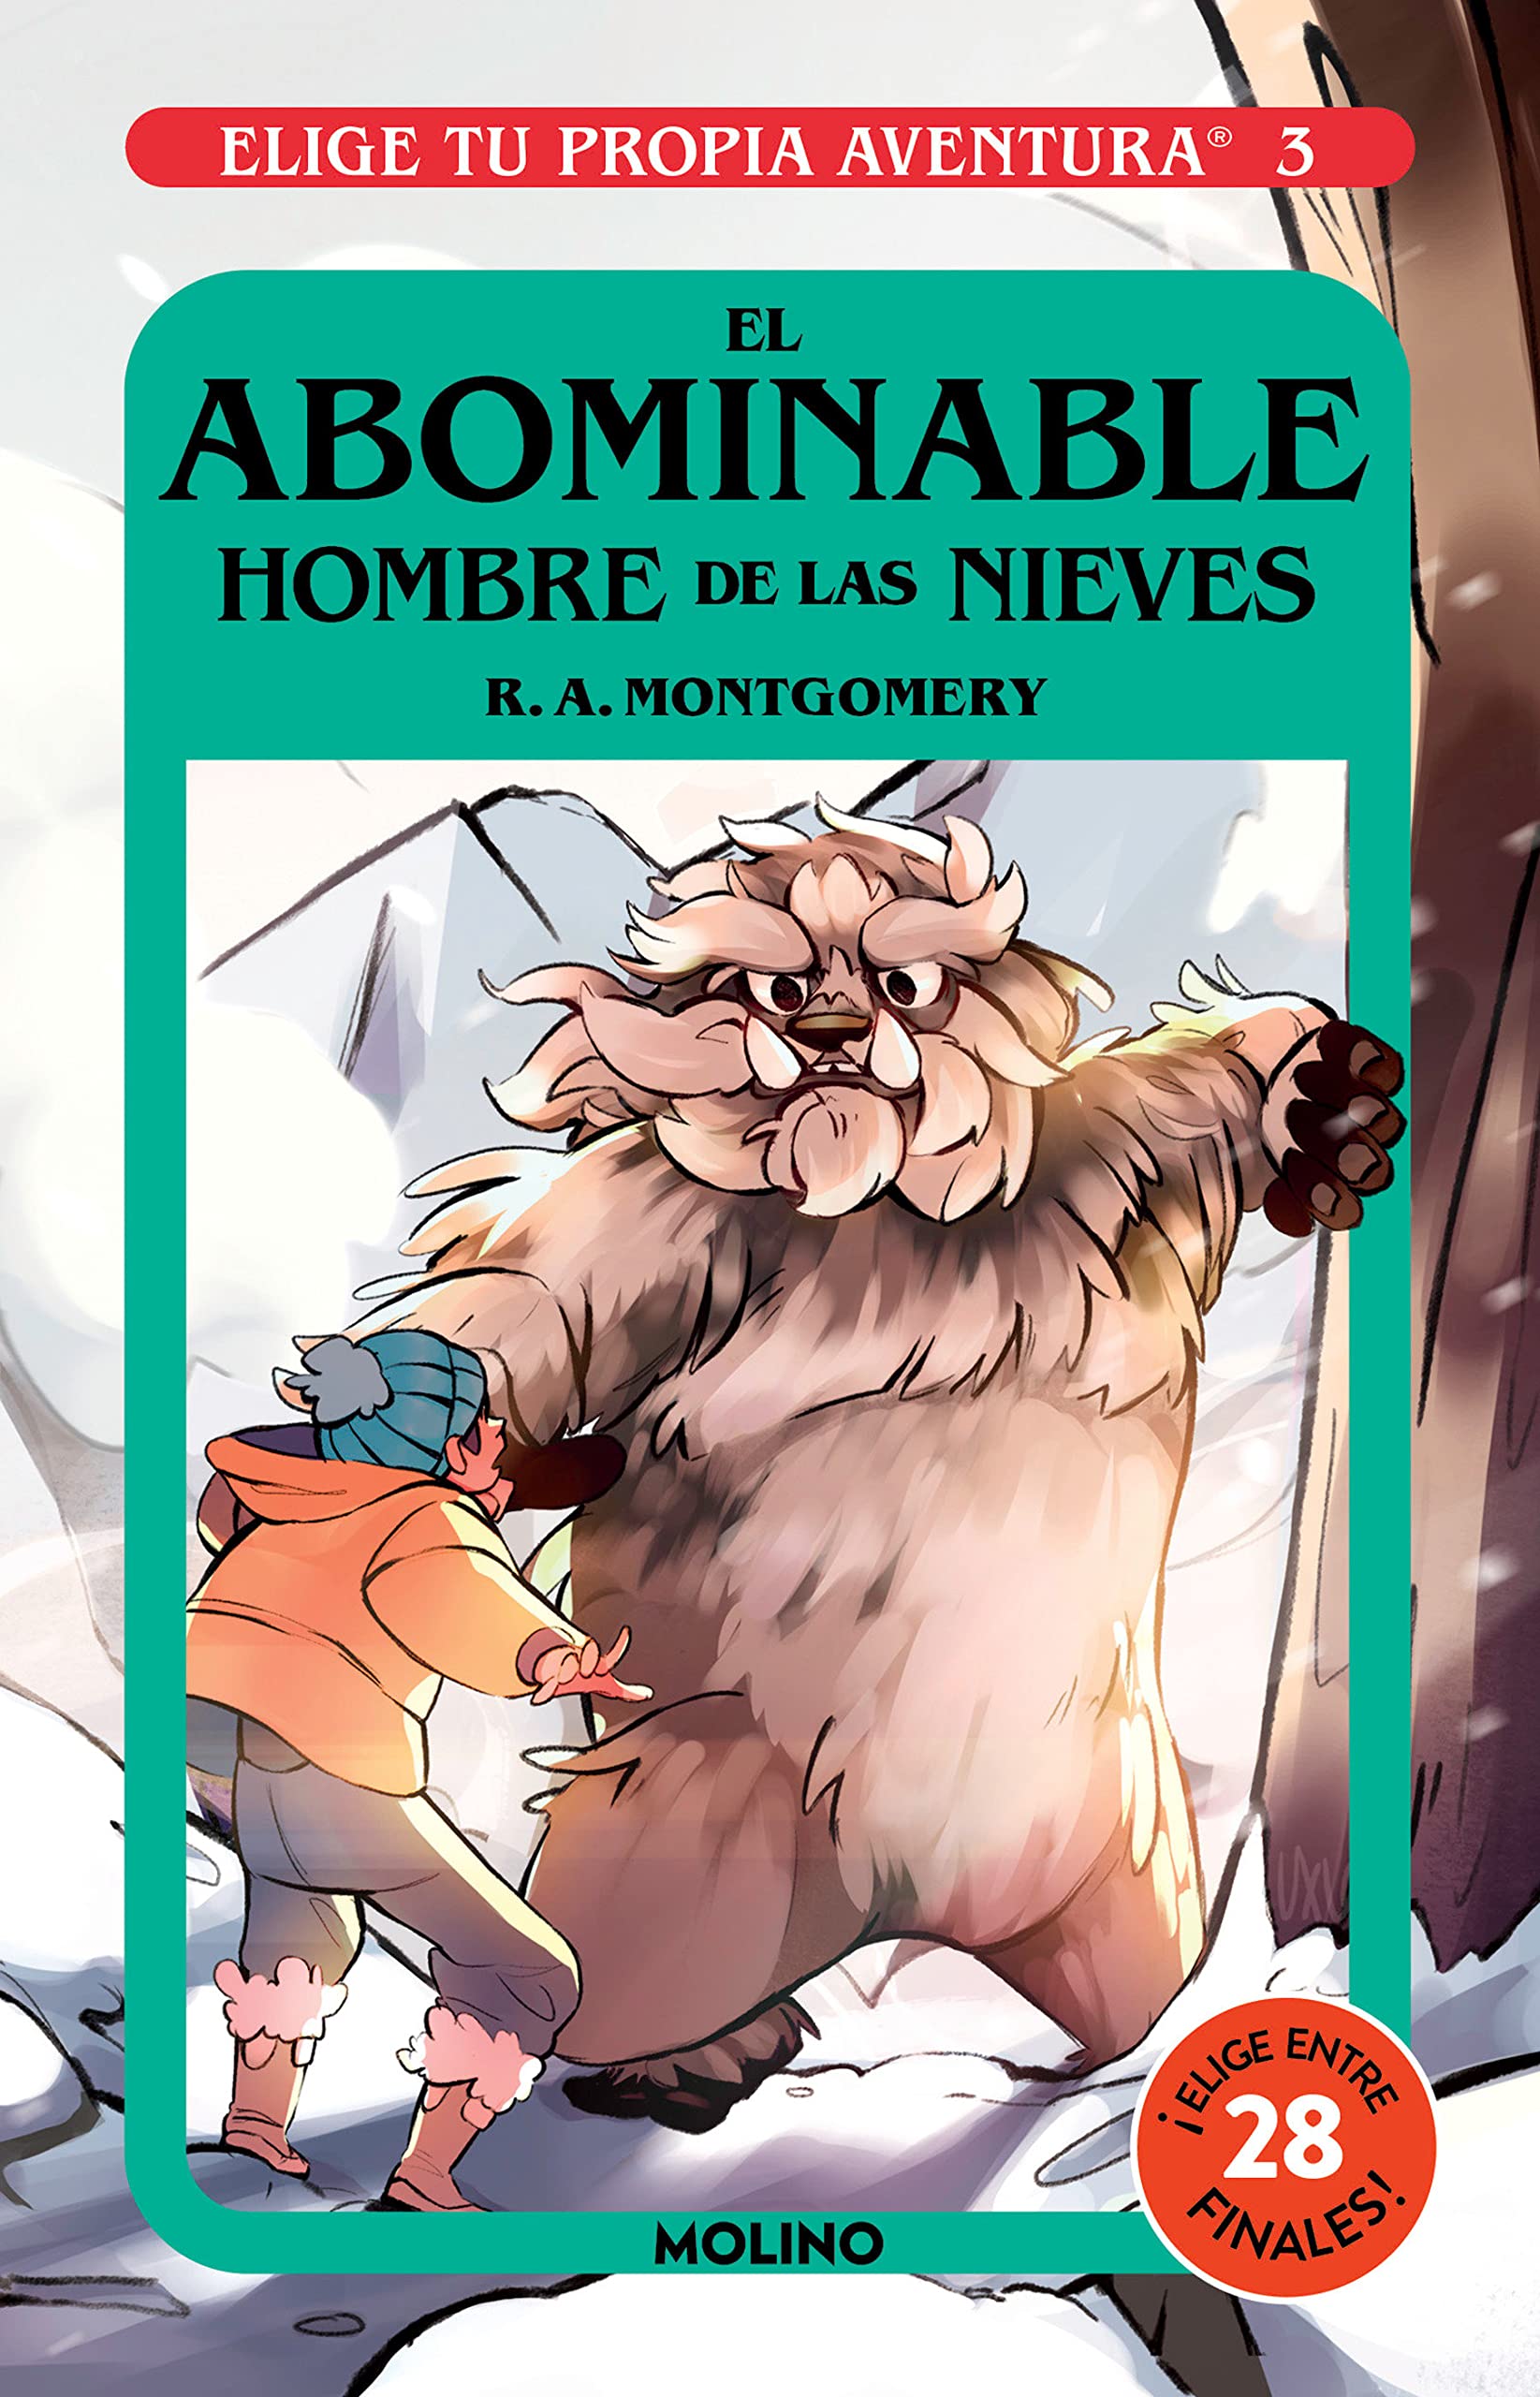 Libro: El Abominable Hombre de las Nieves - Libro 3 de 15: Elige Tu Propia Aventura por R.A. Montgomery